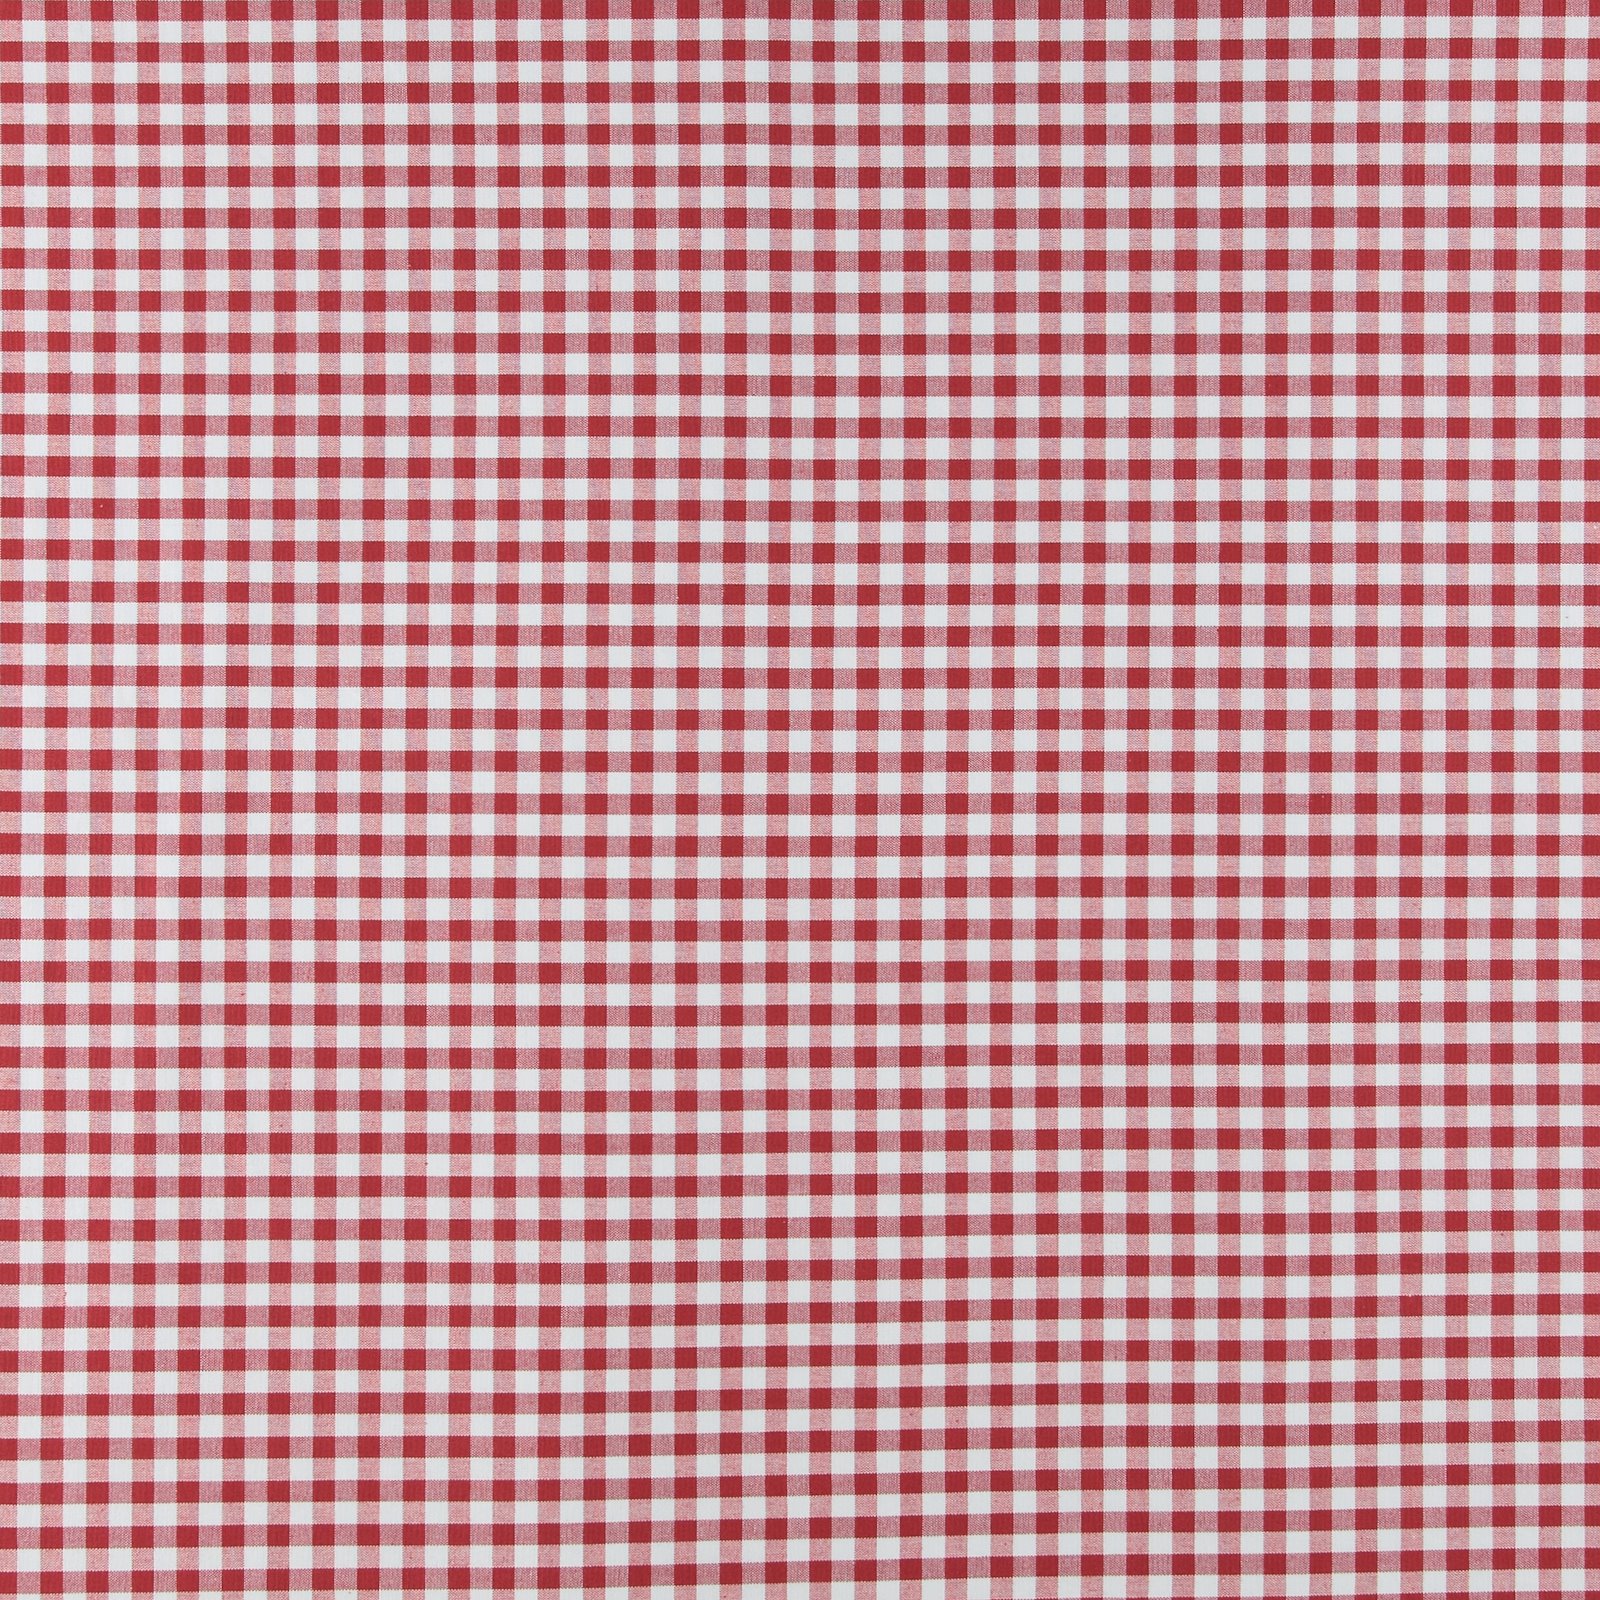 Baumwolle, rot/weiß kariert garngefärbt 810090_pack_sp